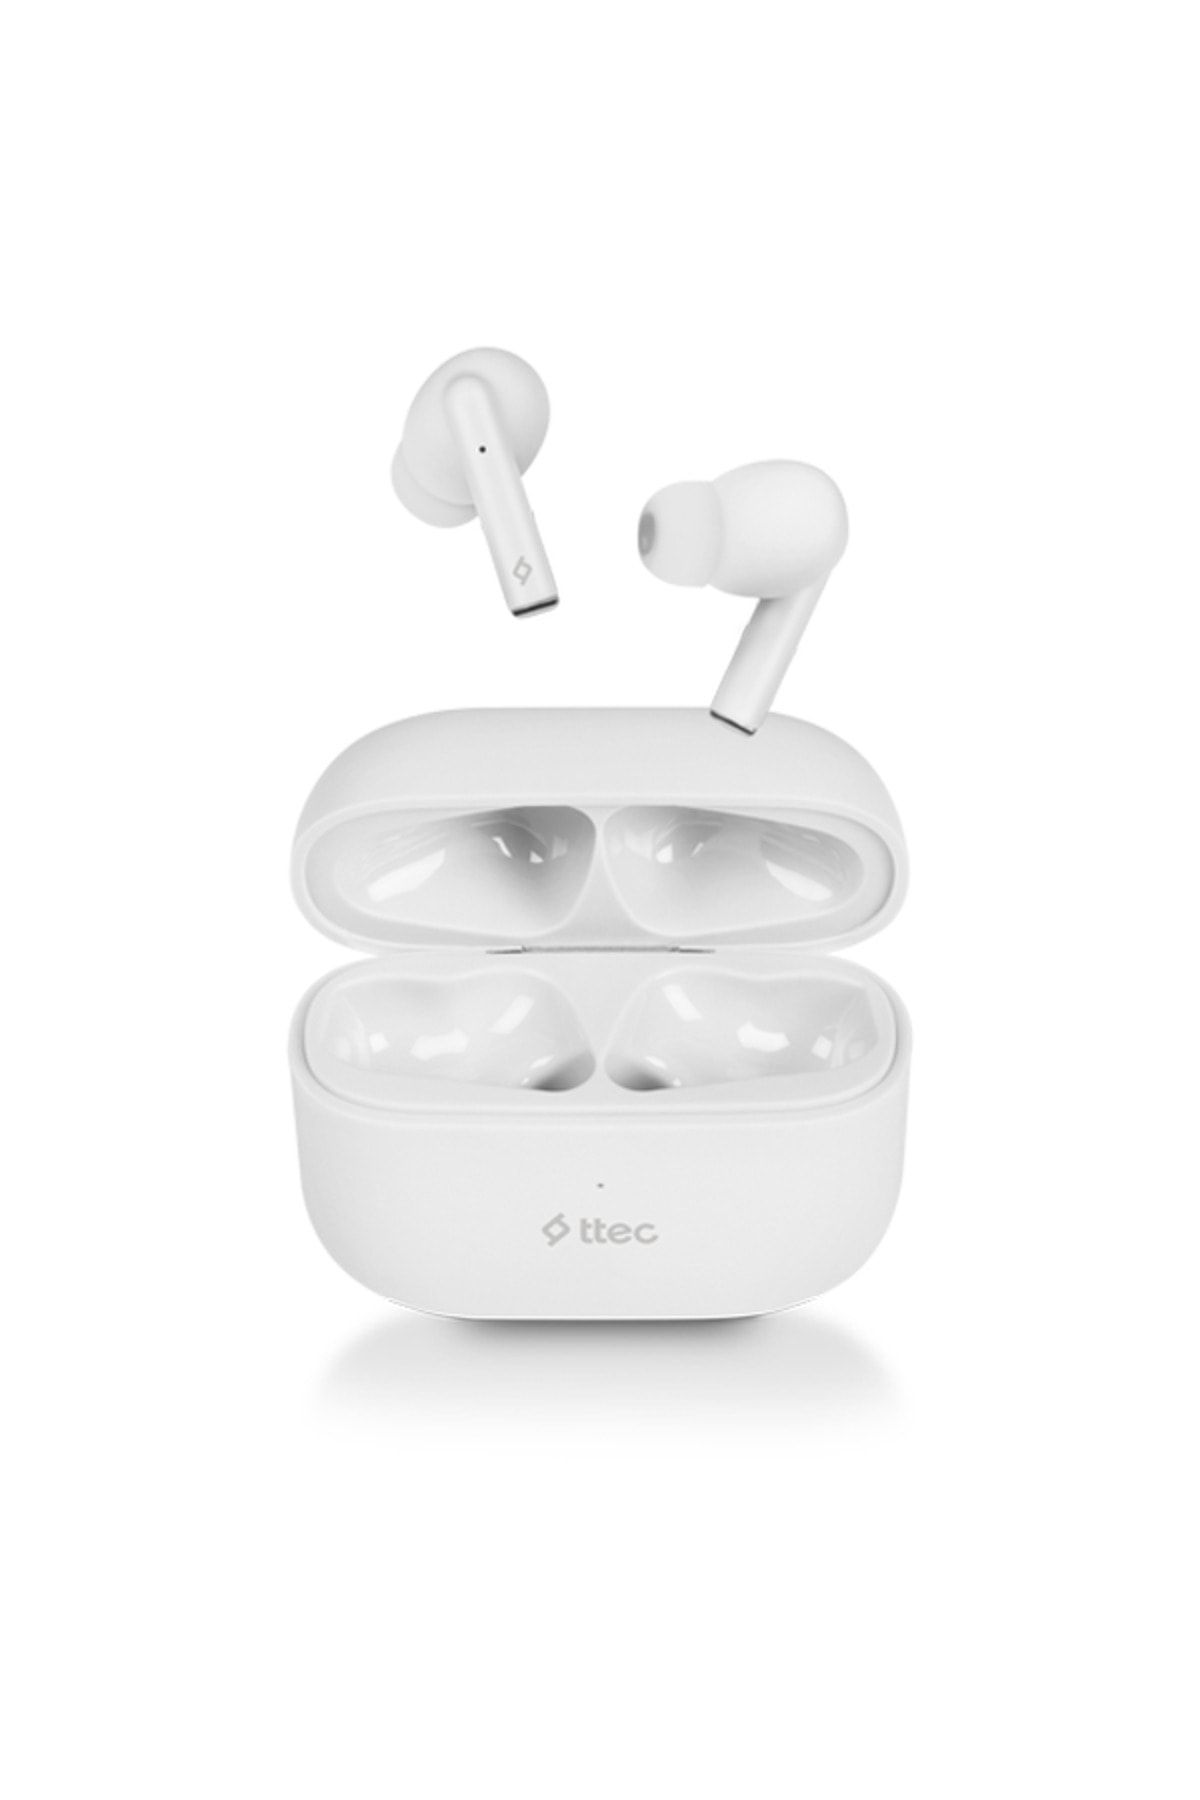 Ttec Airbeat Tone Gerçek Kablosuz Kulak Içi Tws Bluetooth Kulaklık Üstün Ses Derin Bass Gelişmiş Mikrofon